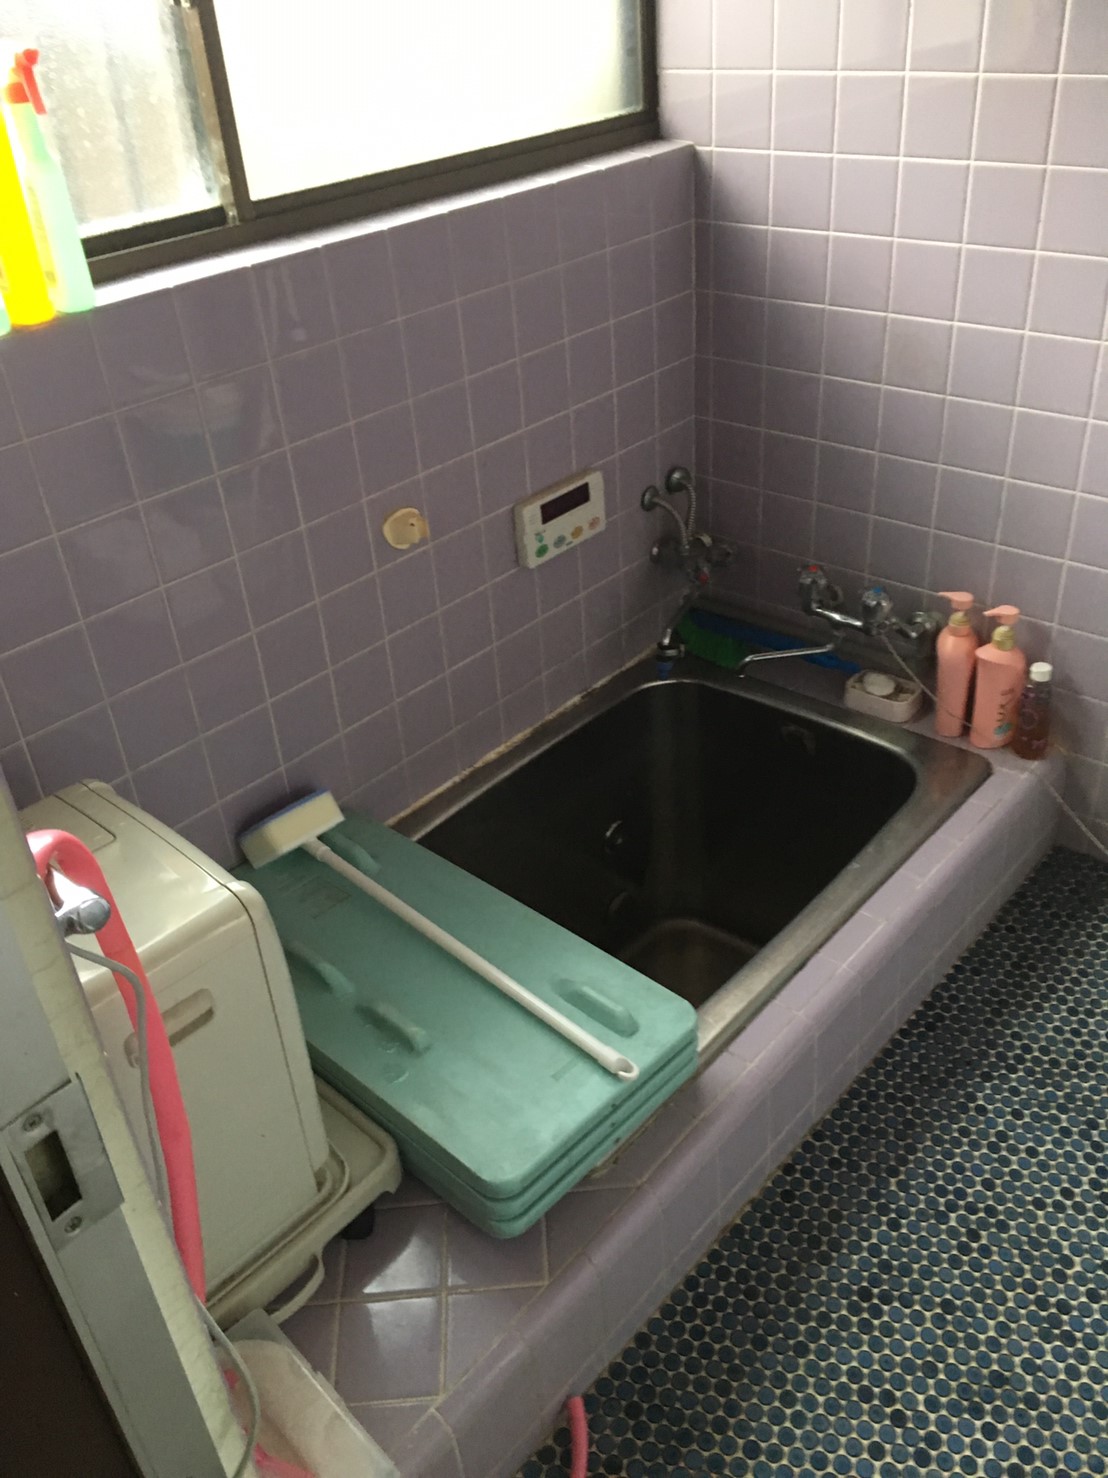 高崎市にて浴室改修前の現場調査にいってきました。